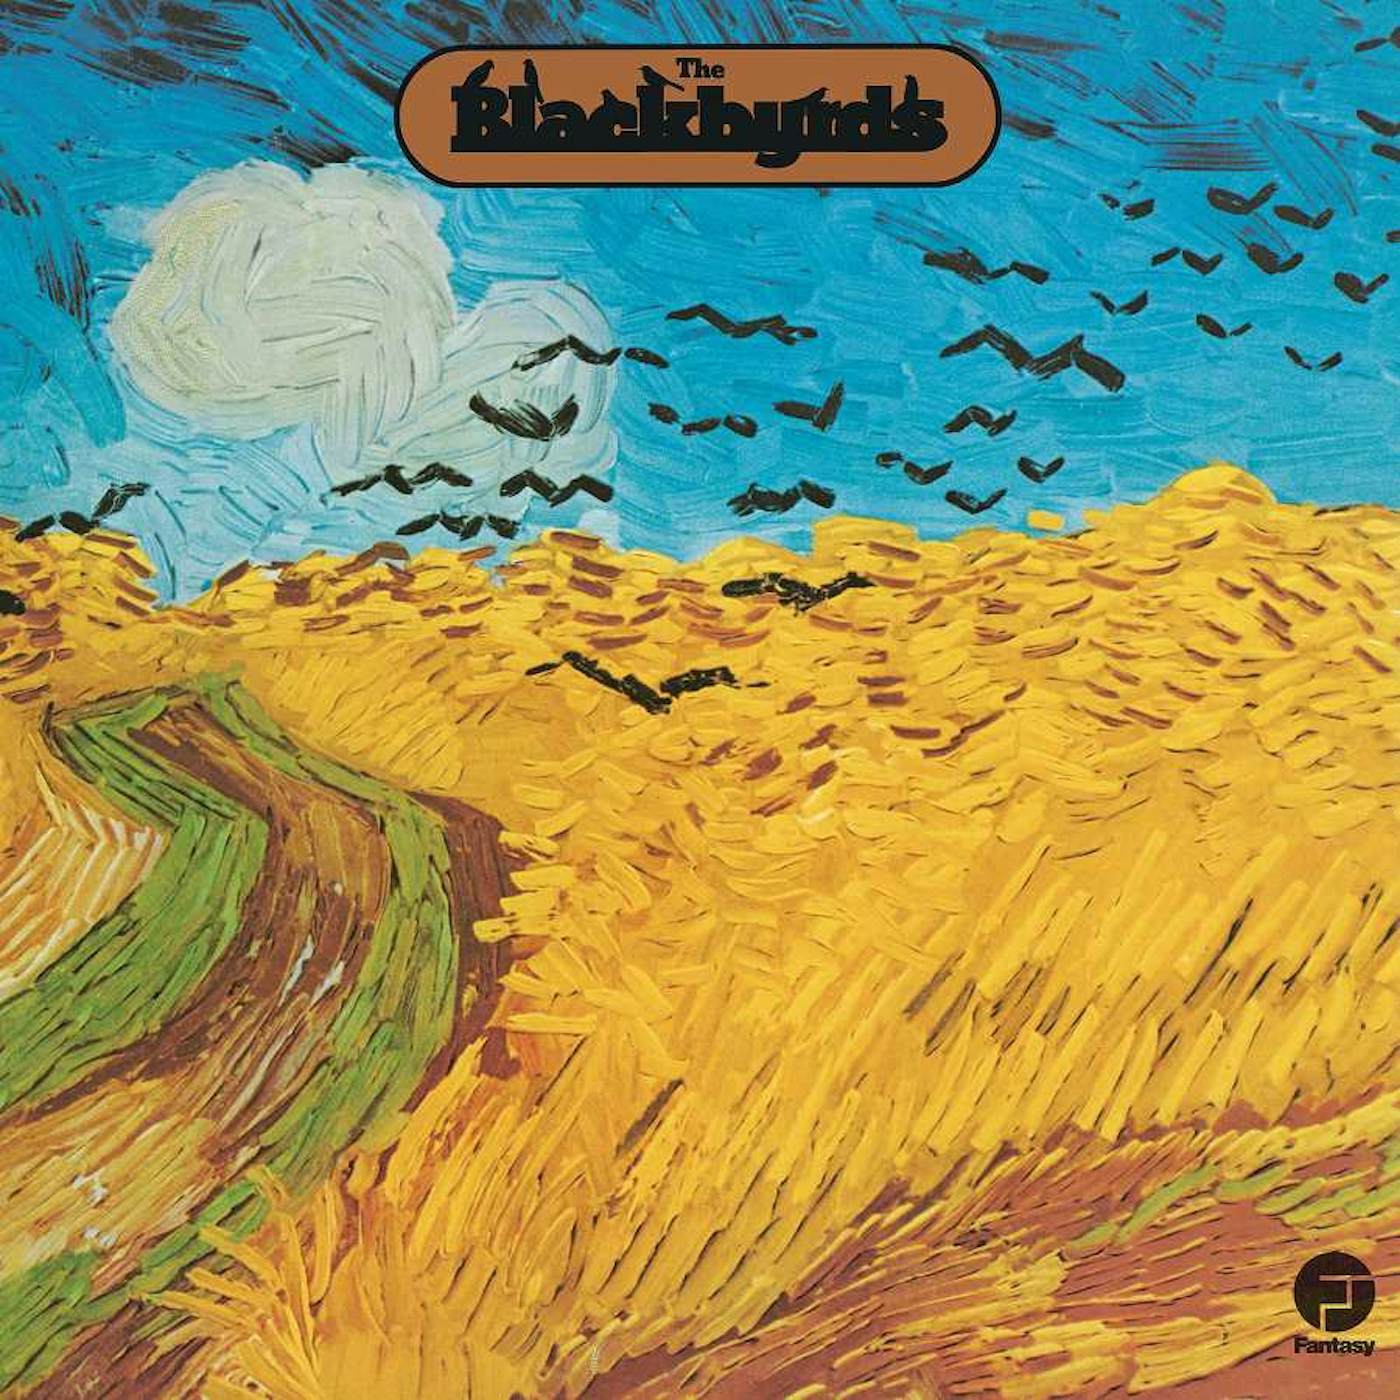 The Blackbyrds Vinyl Record